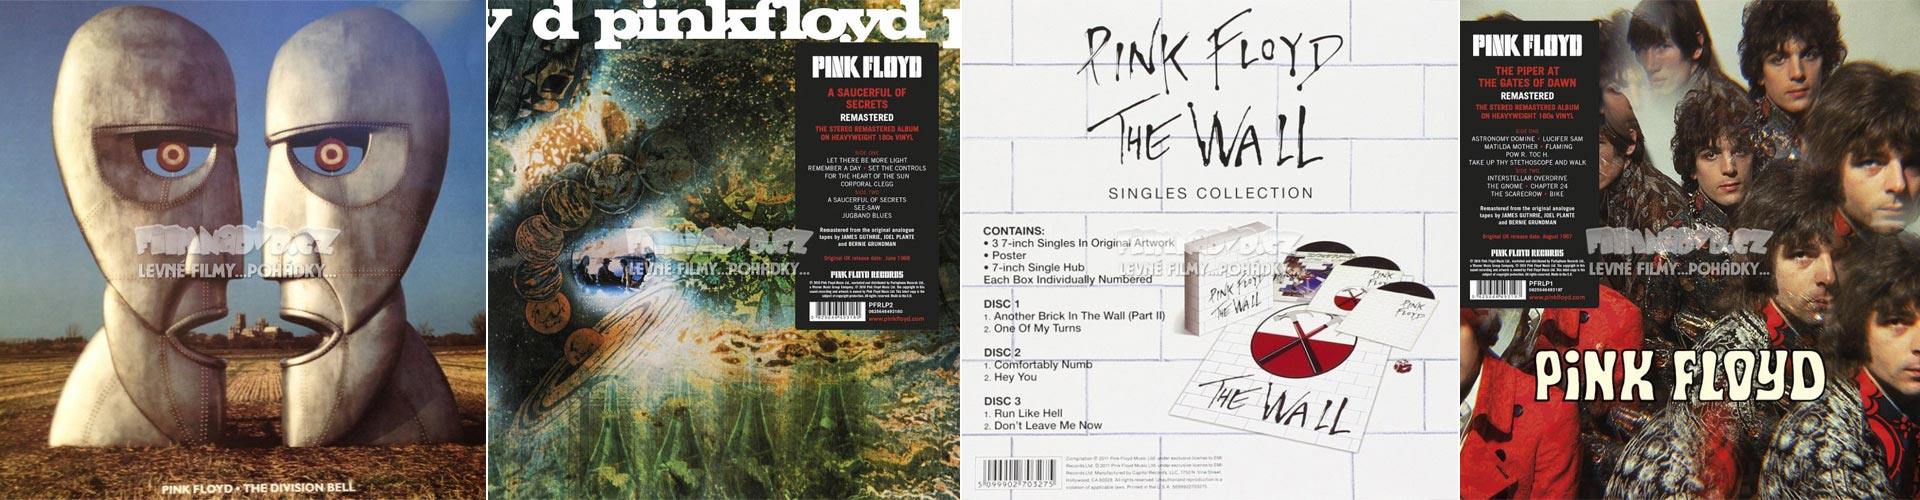 Pink Floyd vinylové desky